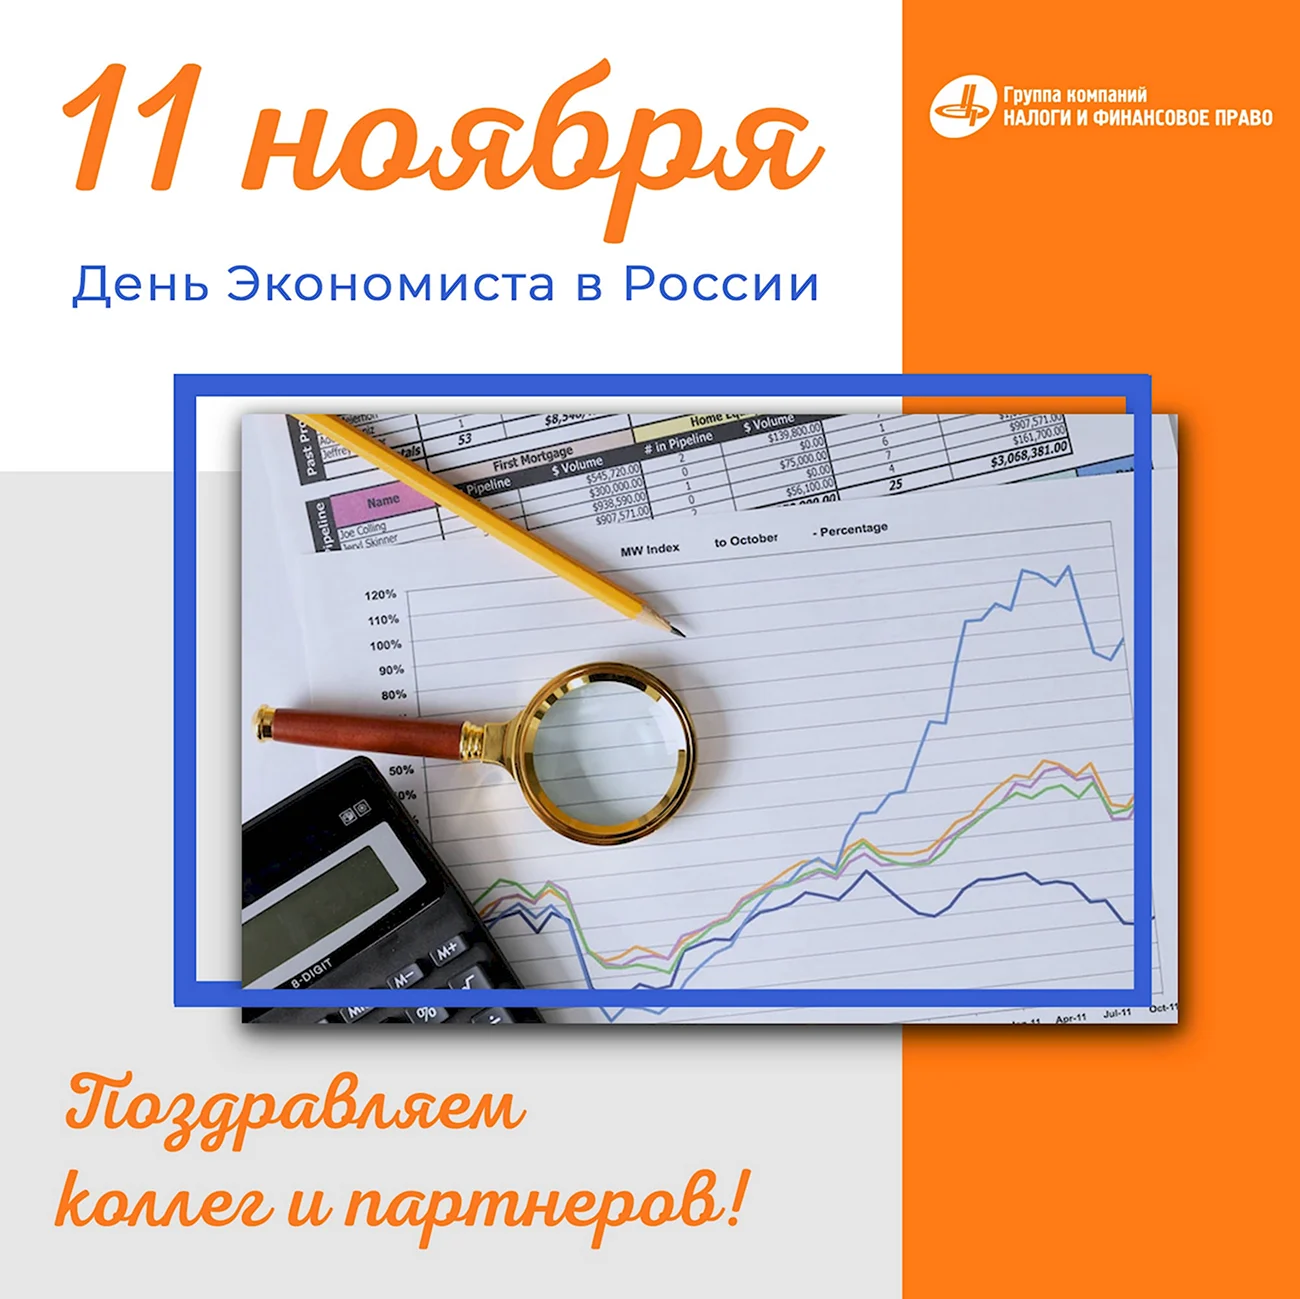 11 Ноября день экономиста в России. Поздравление